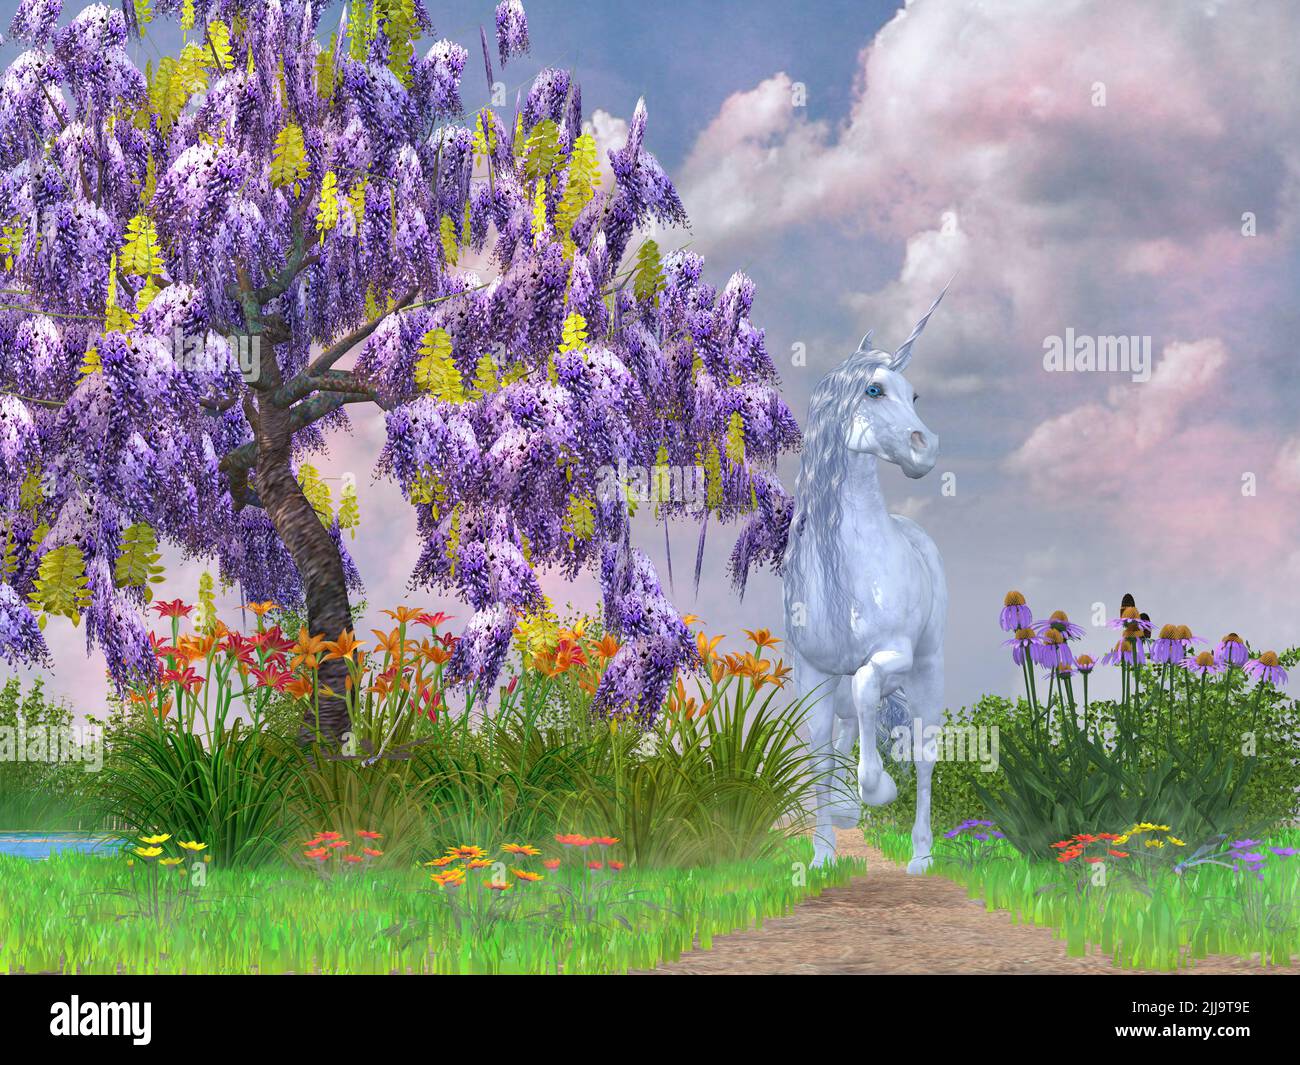 Un legendario unicornio blanco sigue un camino rodeado de flores y un árbol de Wisteria púrpura. Foto de stock